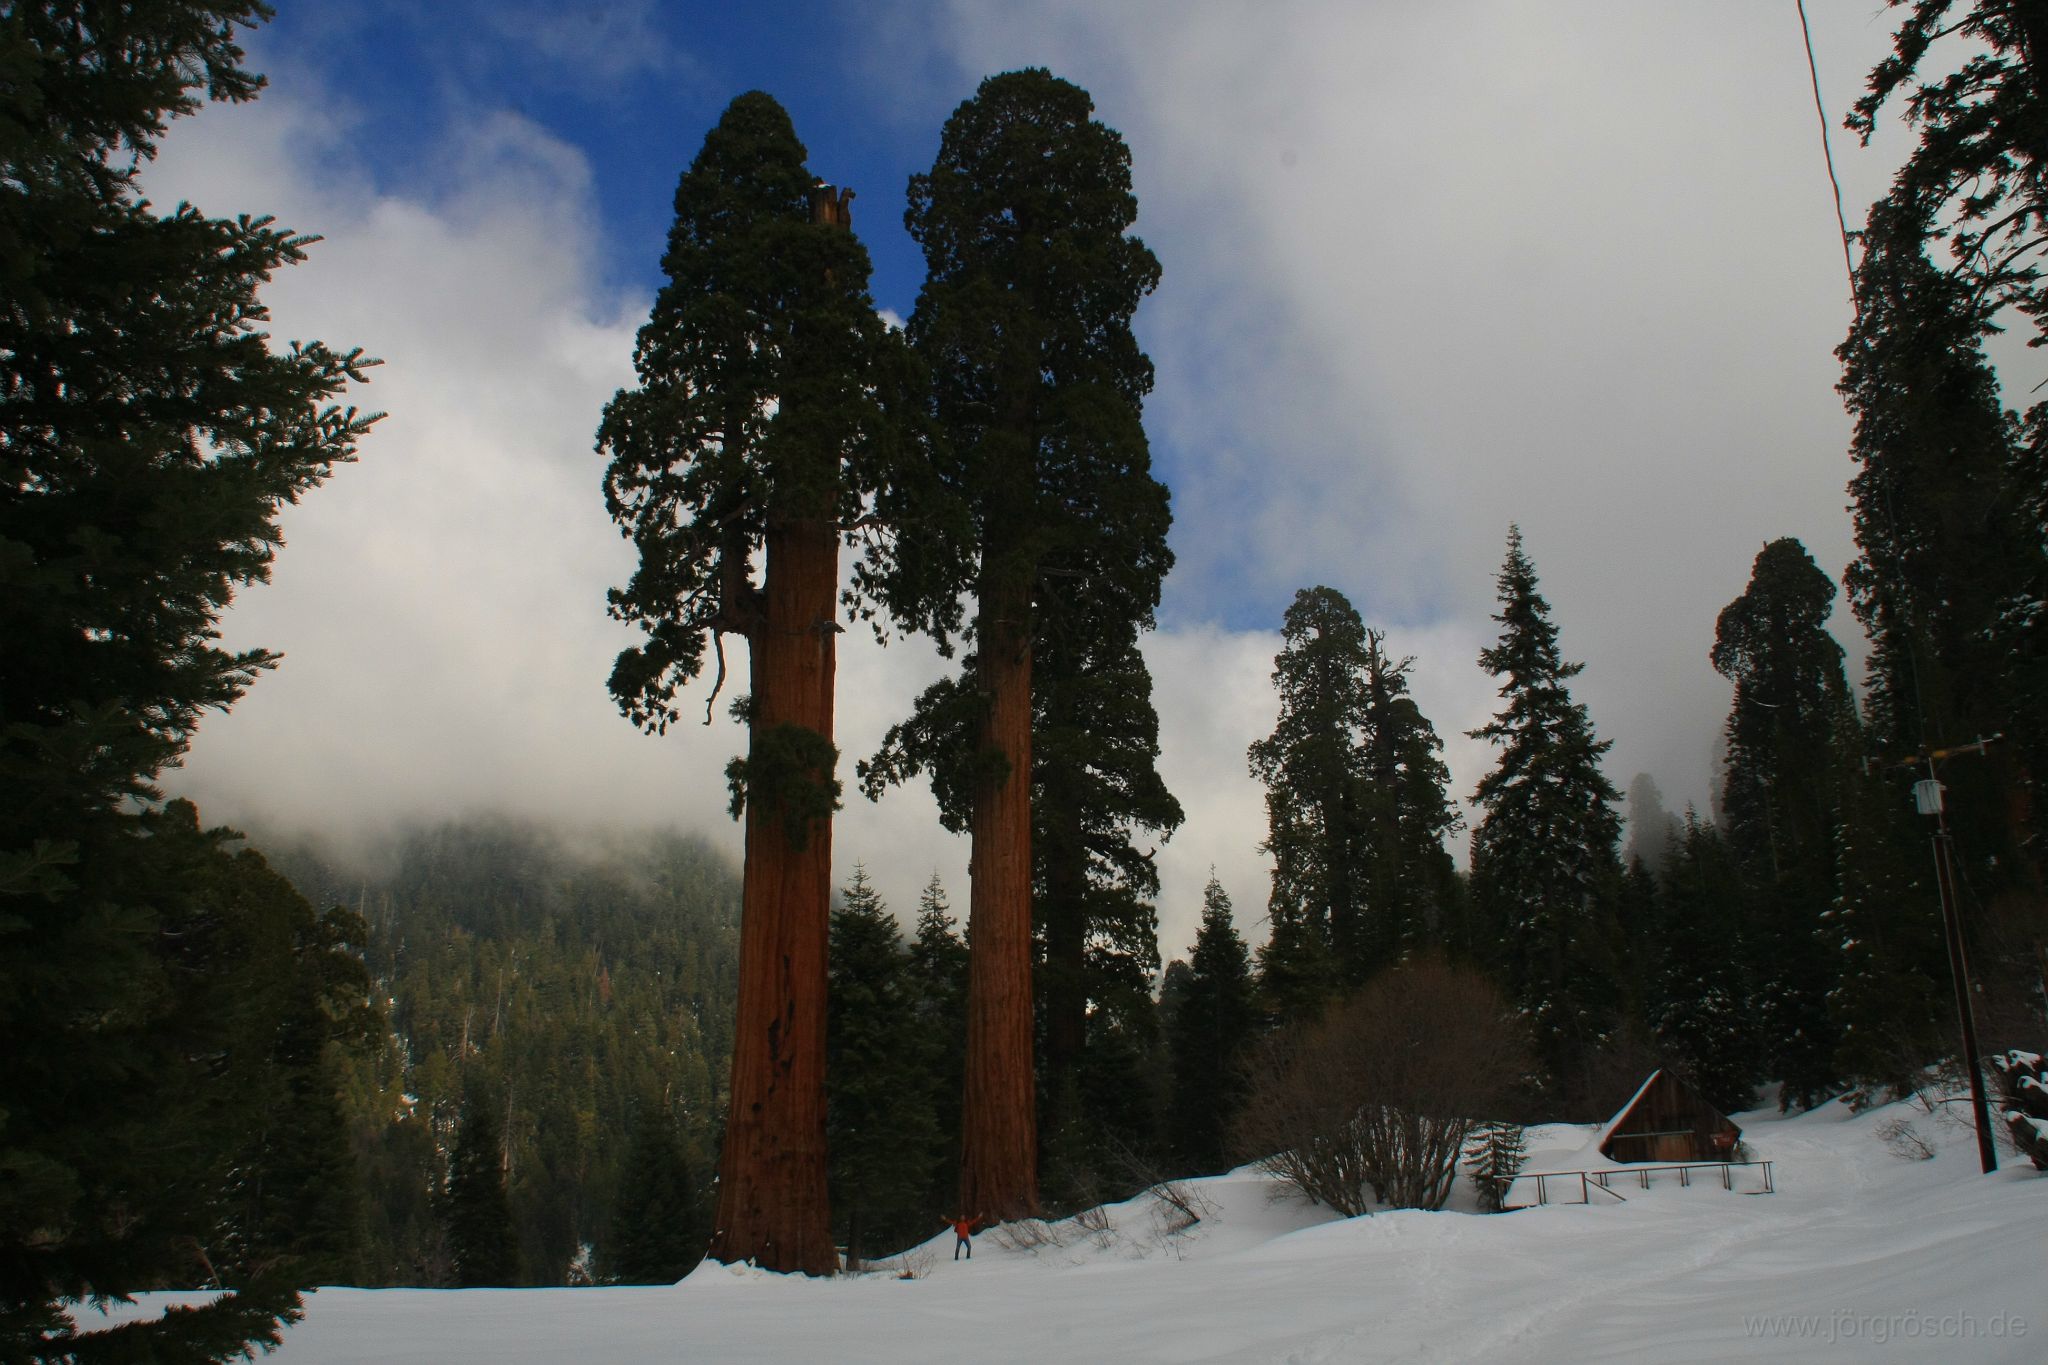 20090309-1-sequoia.jpg - Bäume und ein Mann